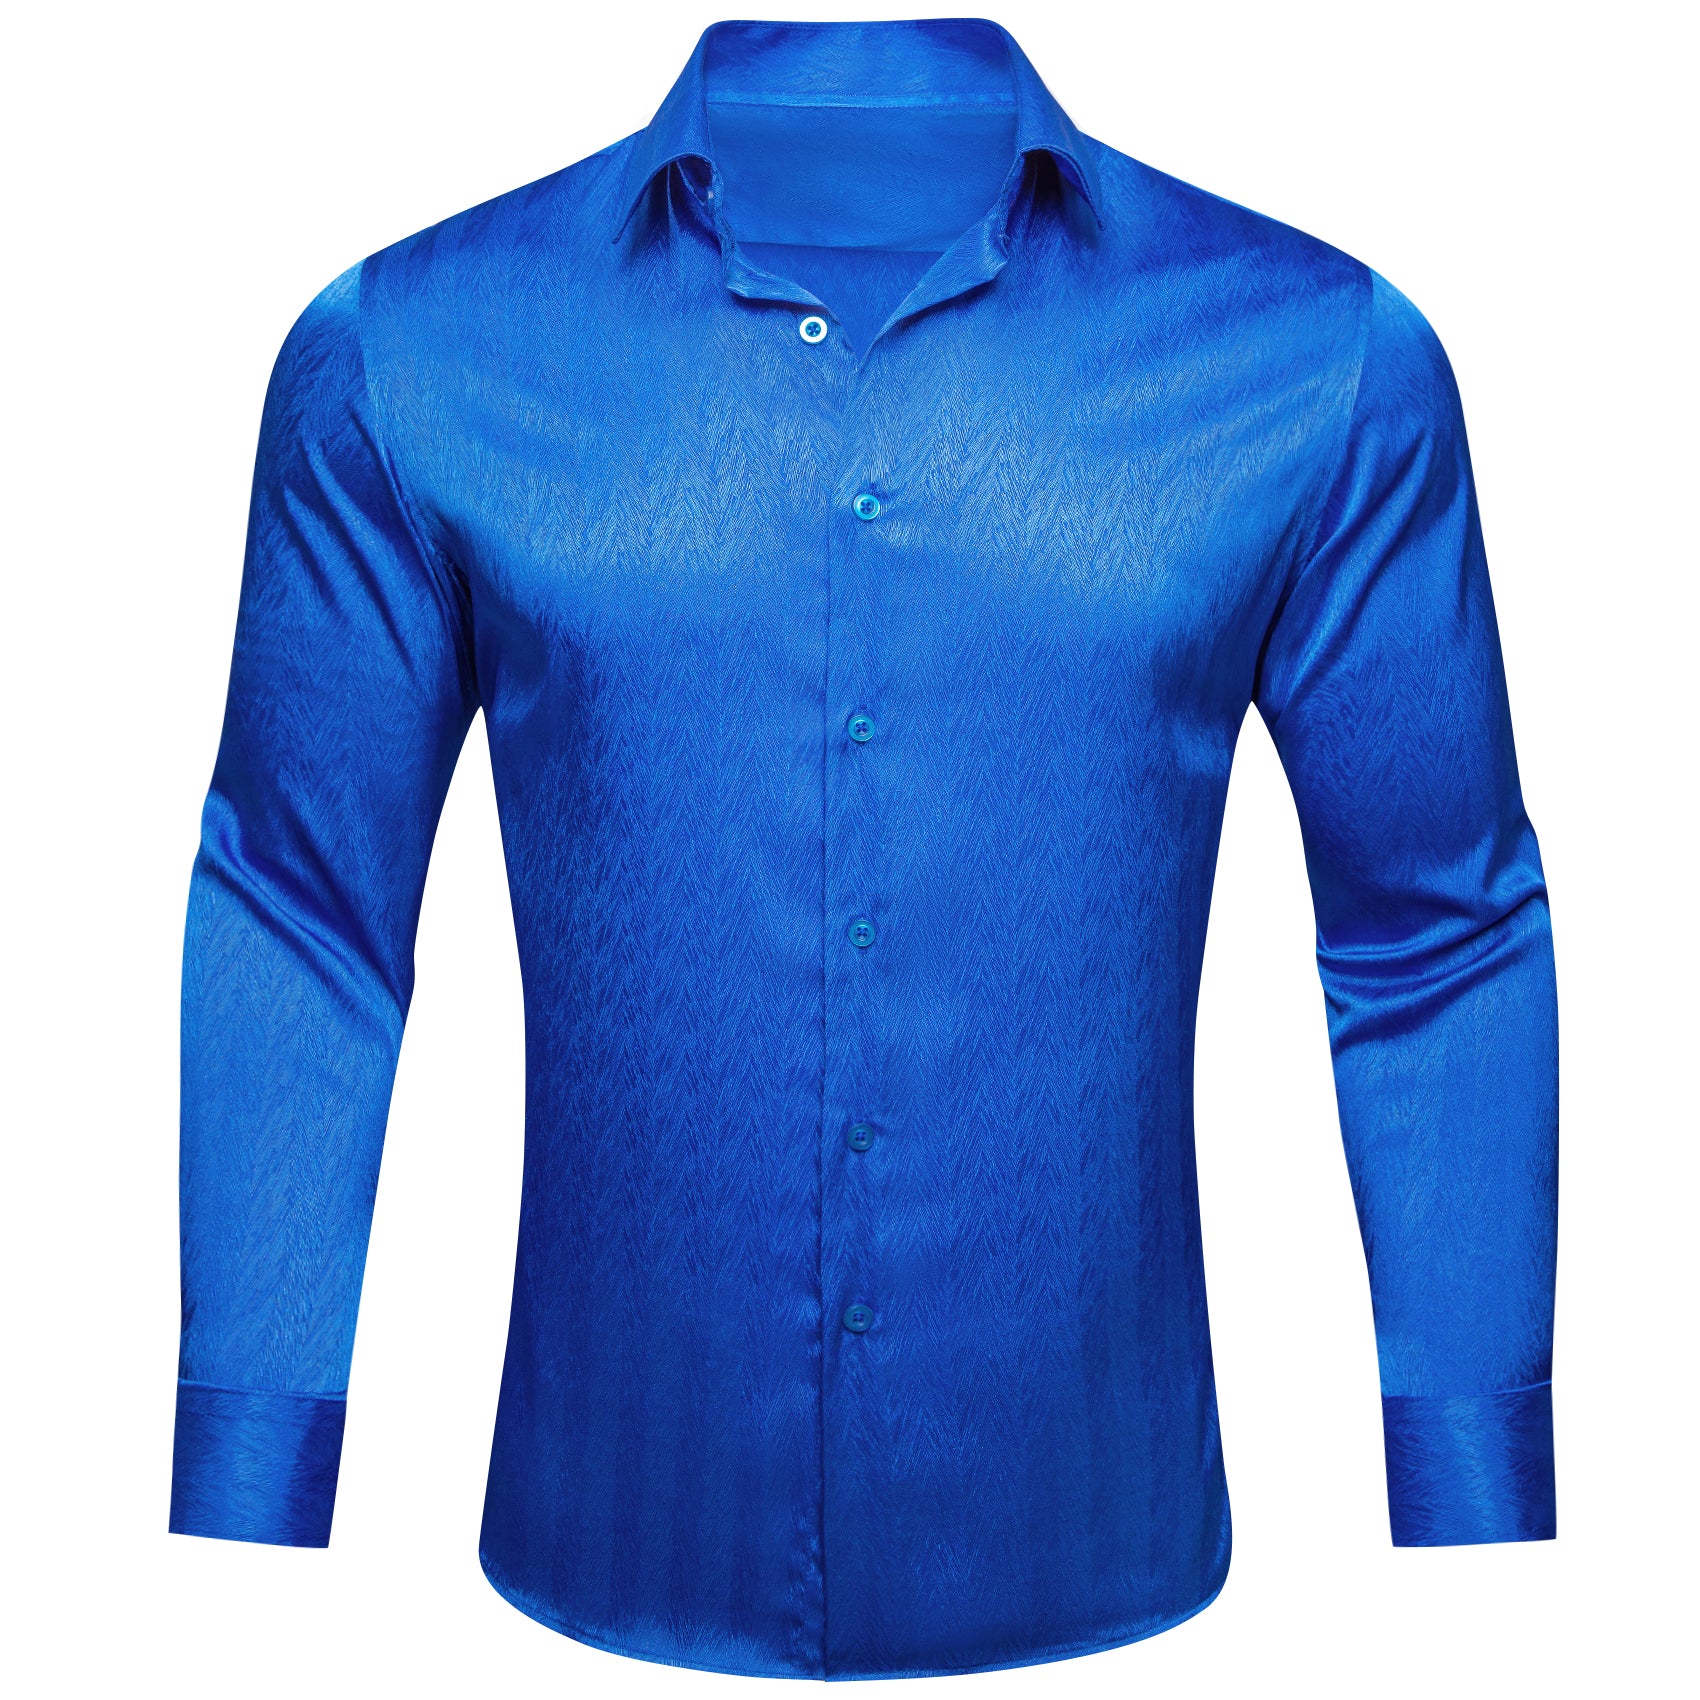 Barry.wang Cobalt Blue Solid Silk Men's Shirt